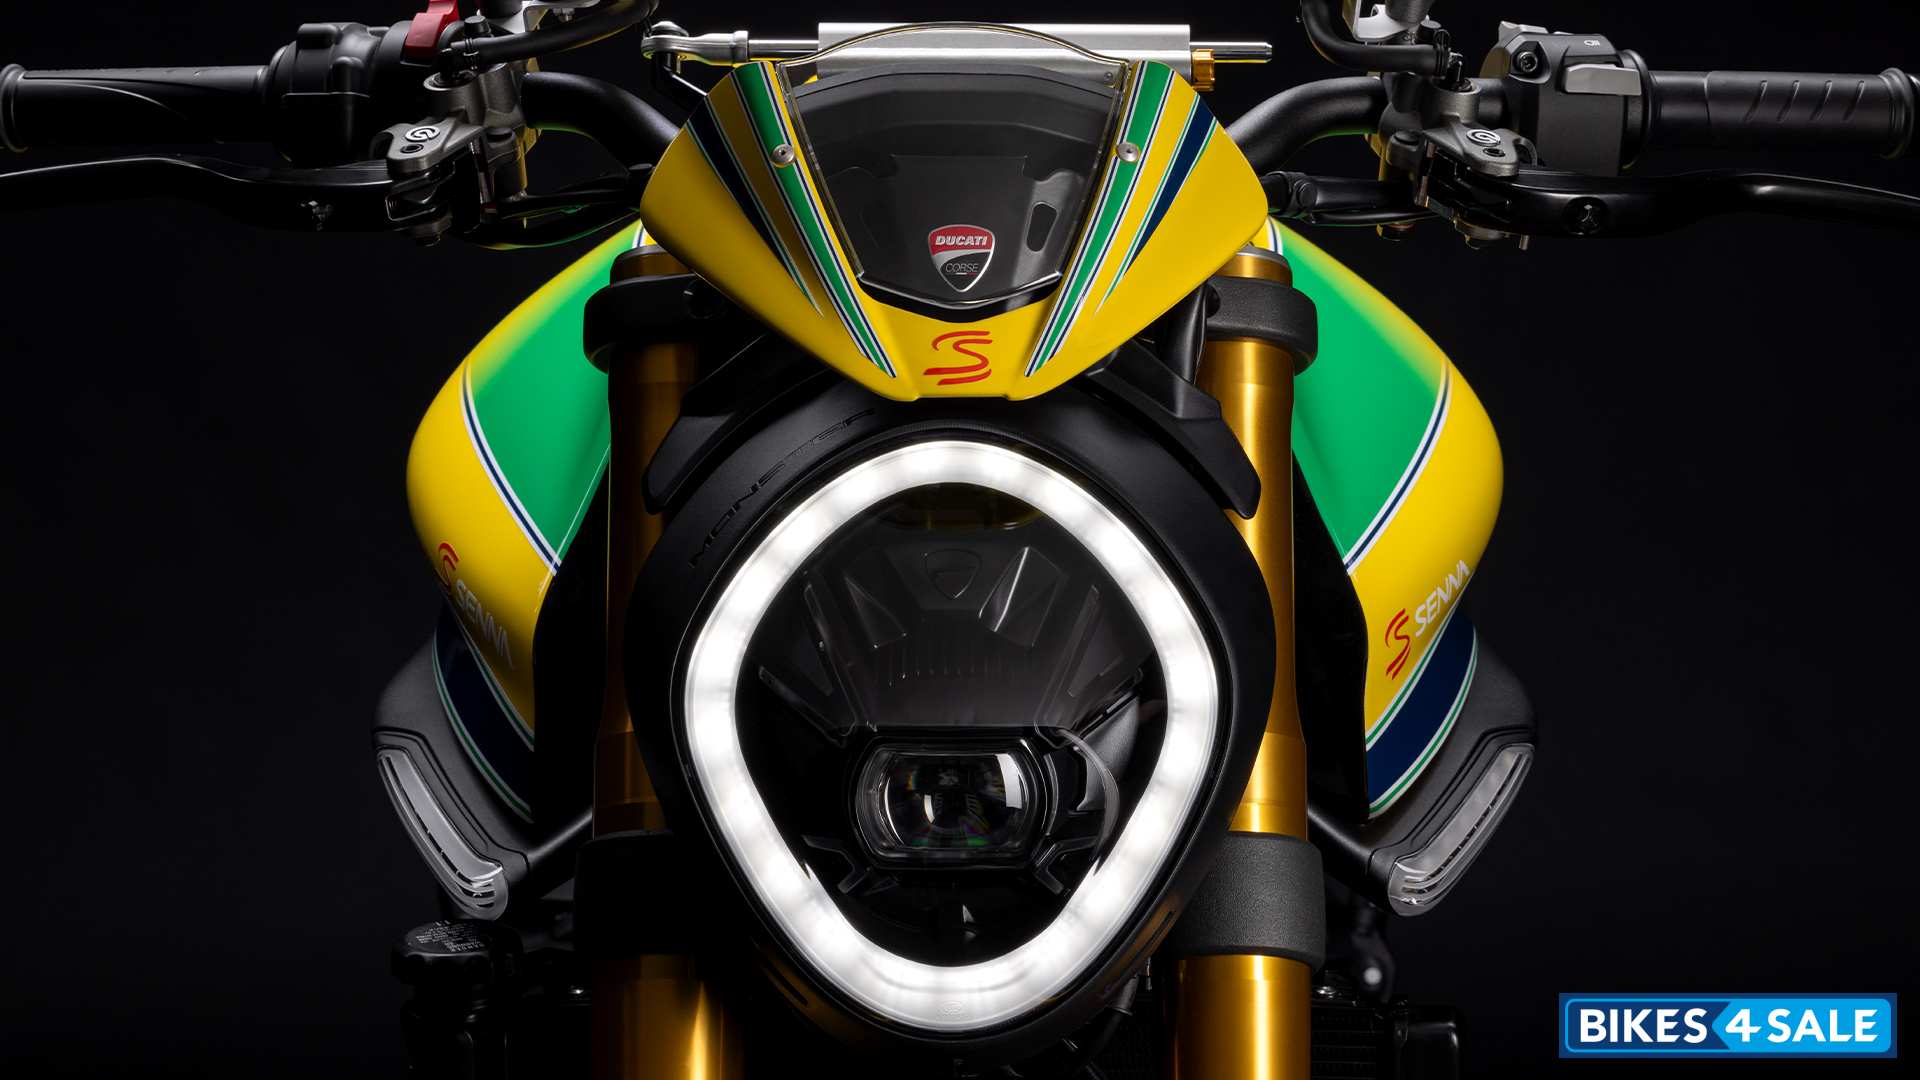 Ducati Monster Senna - Full LED headlight with DRLs